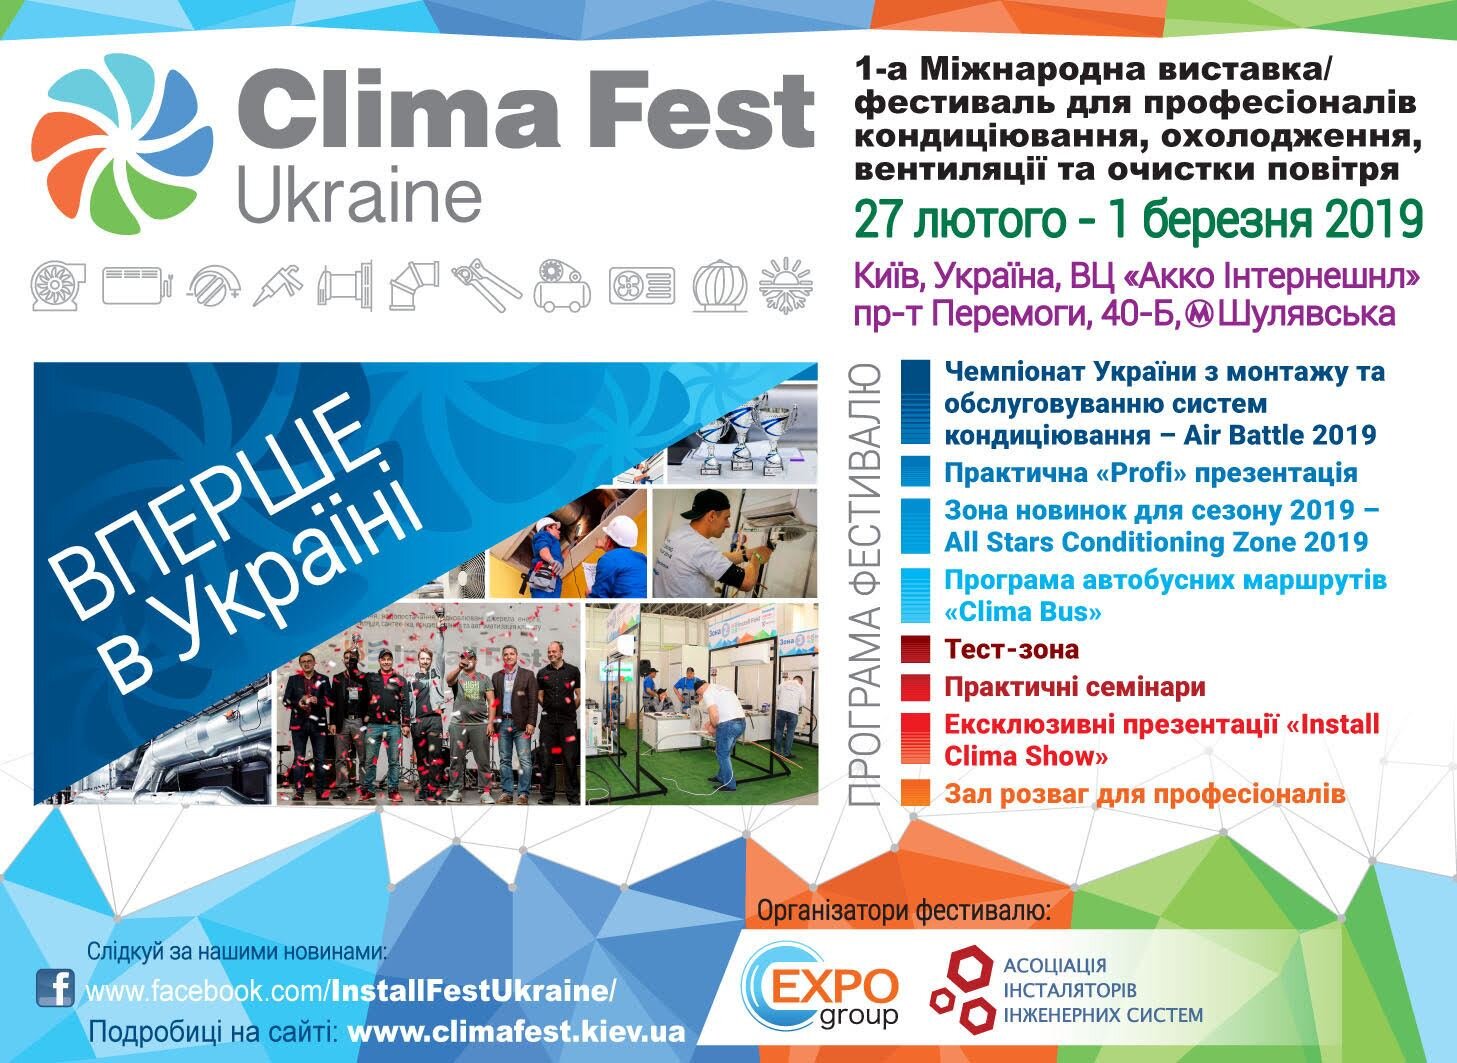 Clima Fest Ukraine1-я международная выставка/фестиваль в Украине - фото pic_6e157034c8ab81c968ed919f42df0b2d_1920x9000_1.jpg